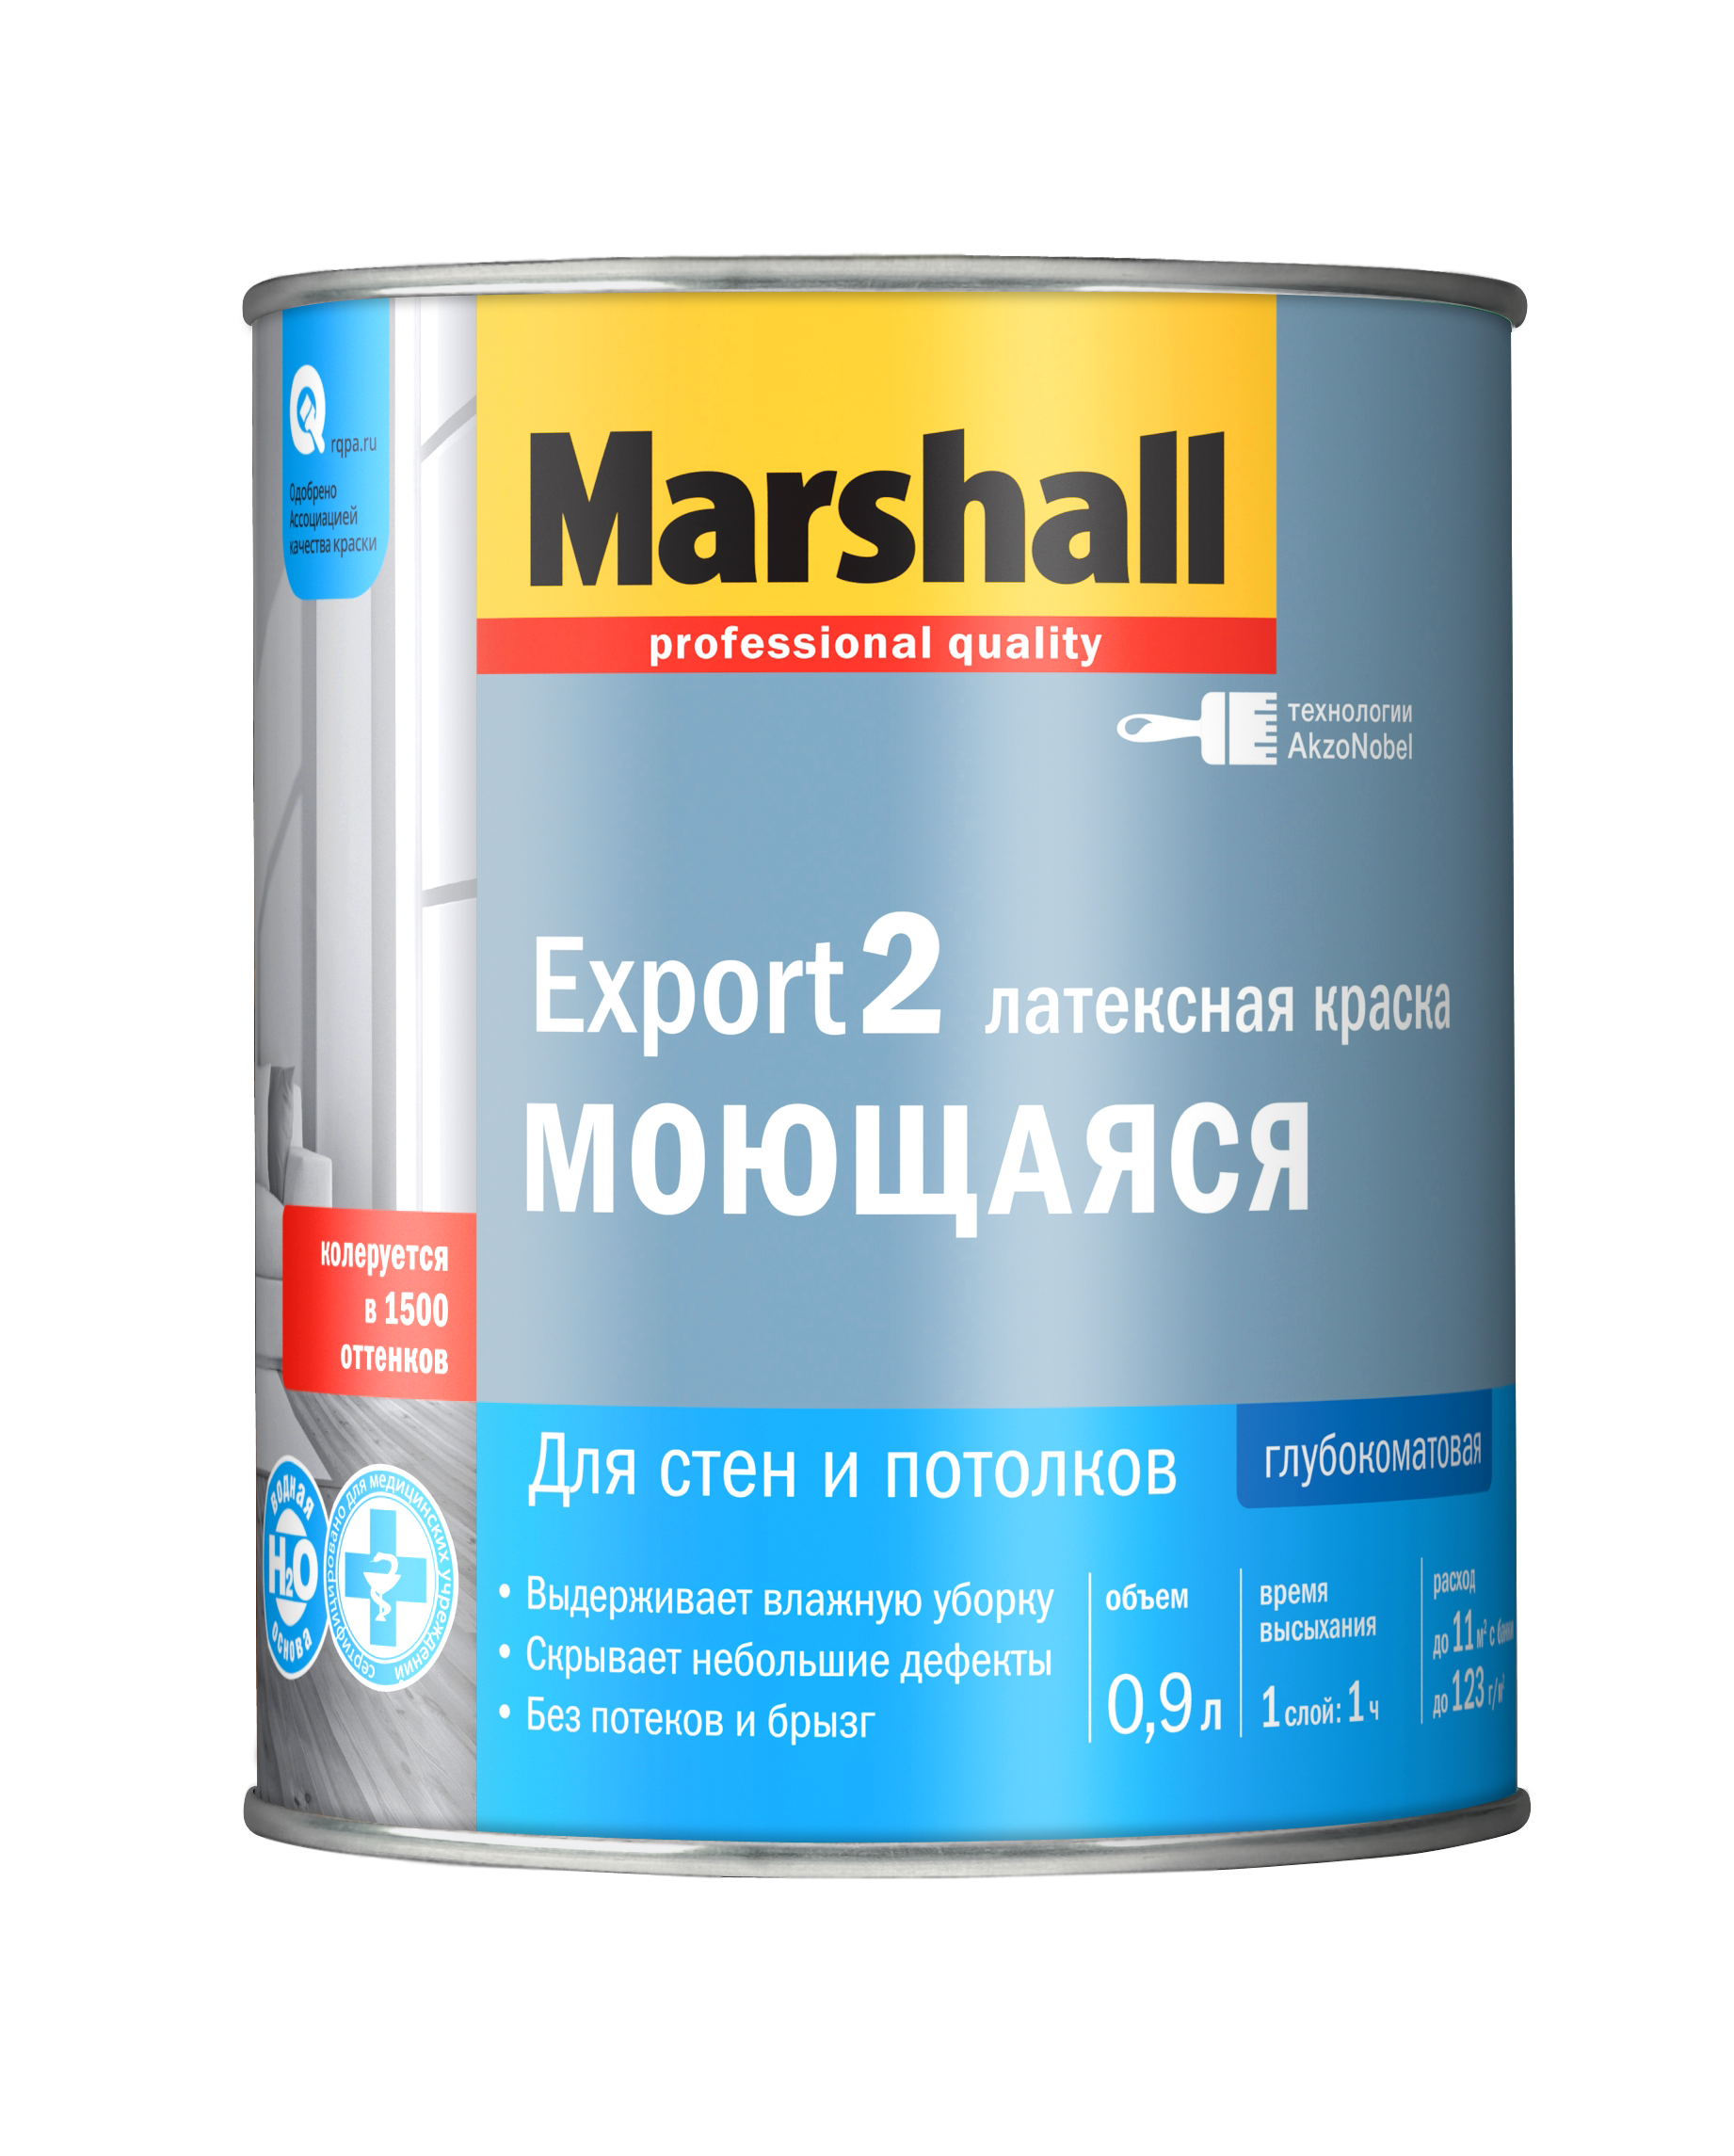 Краска Маршал Экспорт-2/Marshall Export-2 влагостойкая купить Коломна, цена, отзывы. Фото N3